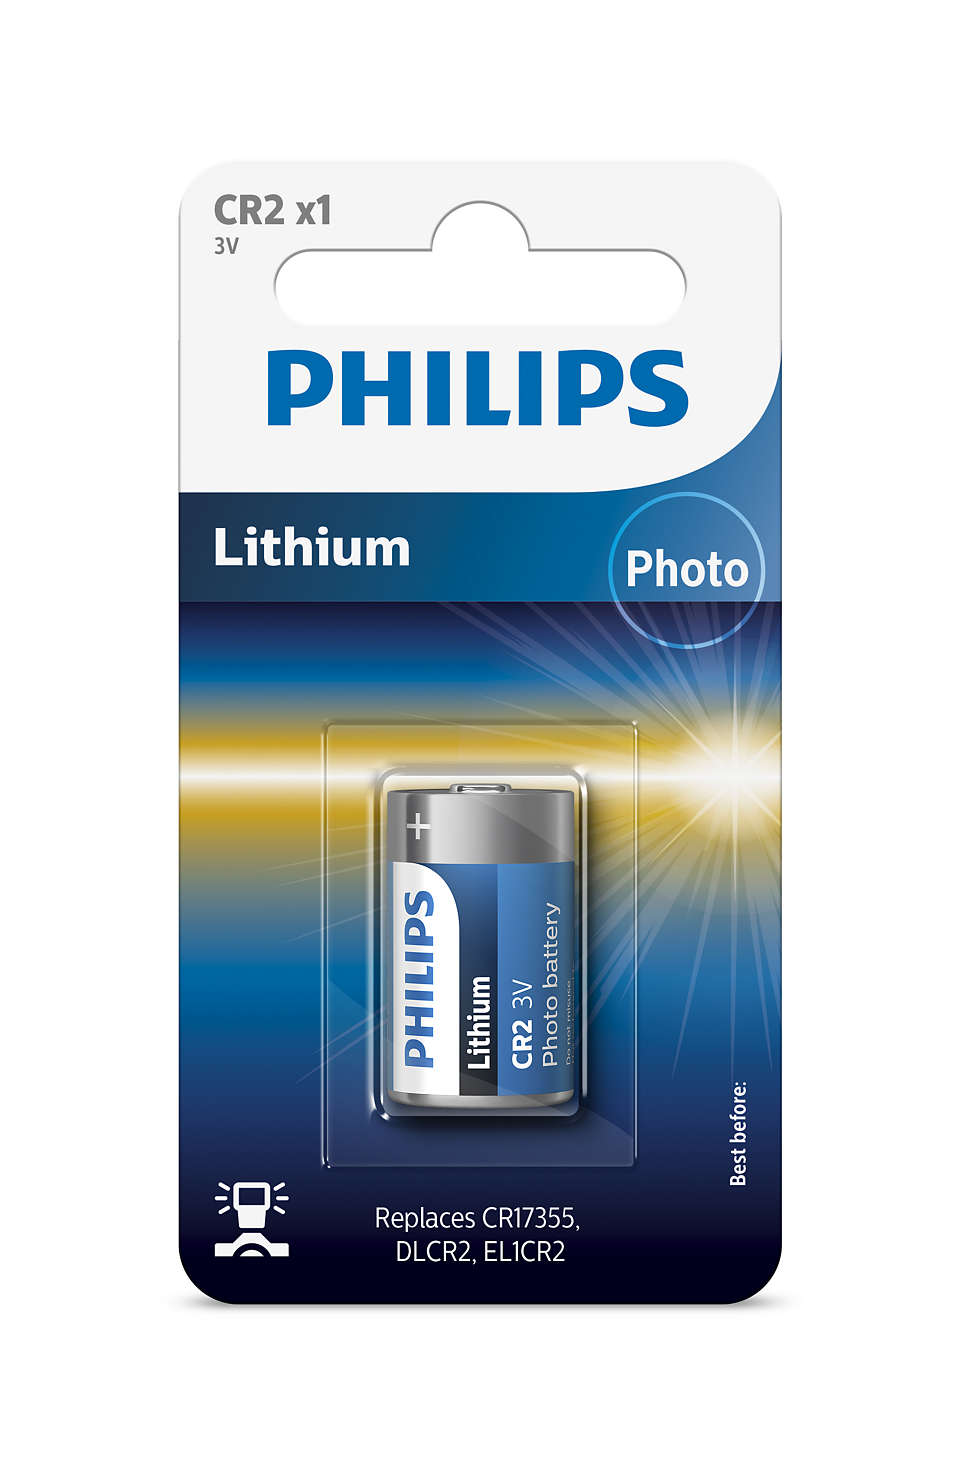 Lithium-Technologie erstklassiger Qualität für Ihre Kamera